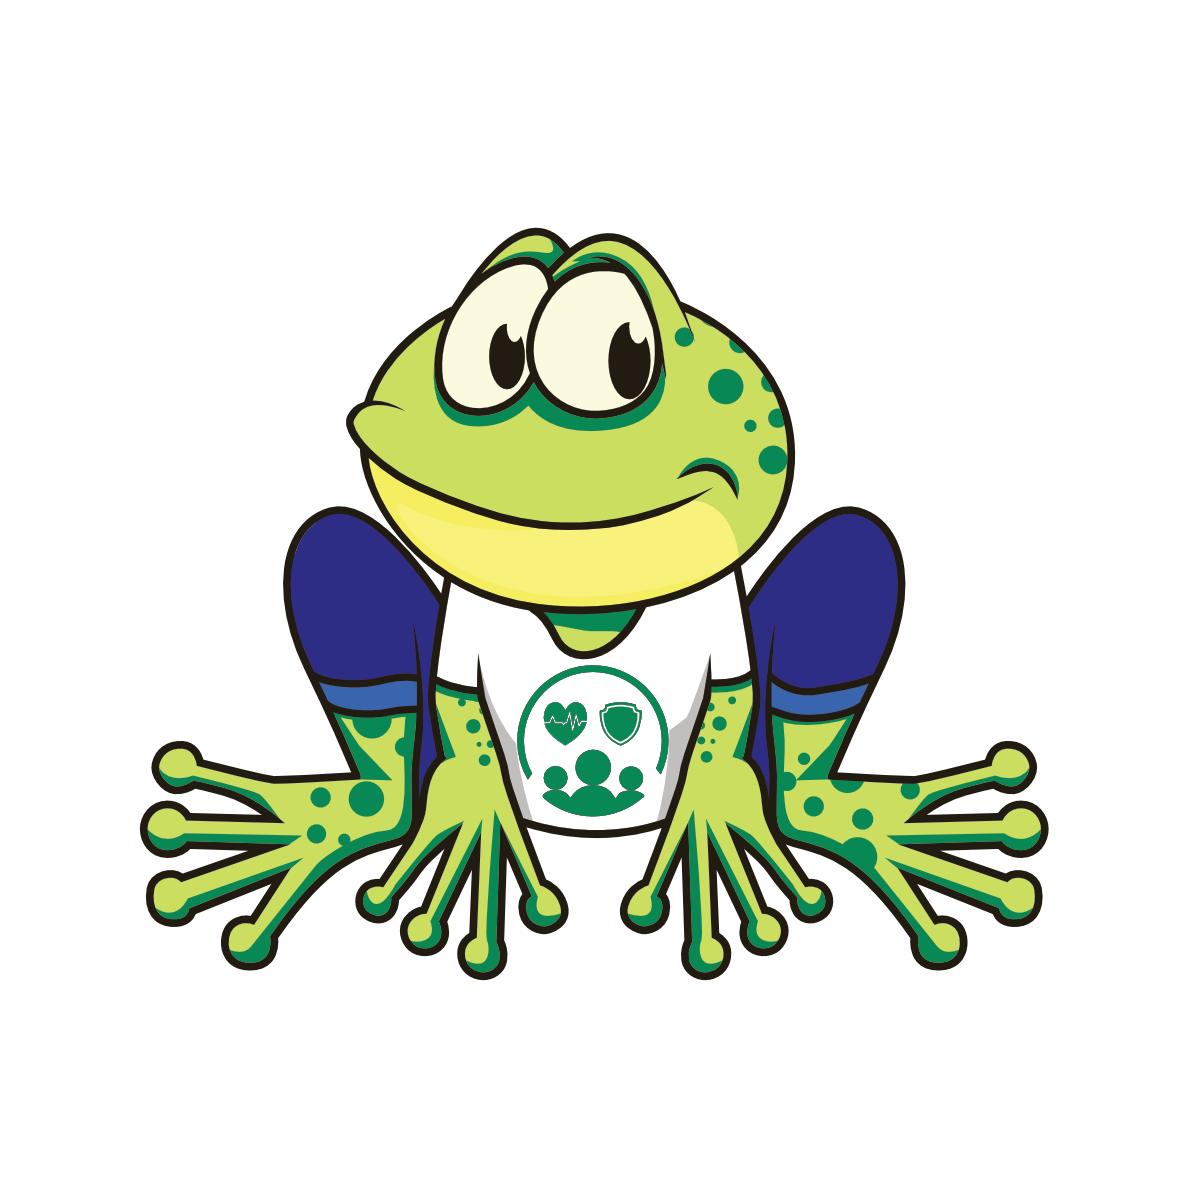 Ein grüner frosch auf weißem hintergrund. Der frosch trägt eine blaue hose, und ein weißes tshirt mit einem logo. Das Logo zeigt ein schlagendes Herz und ein Schild.